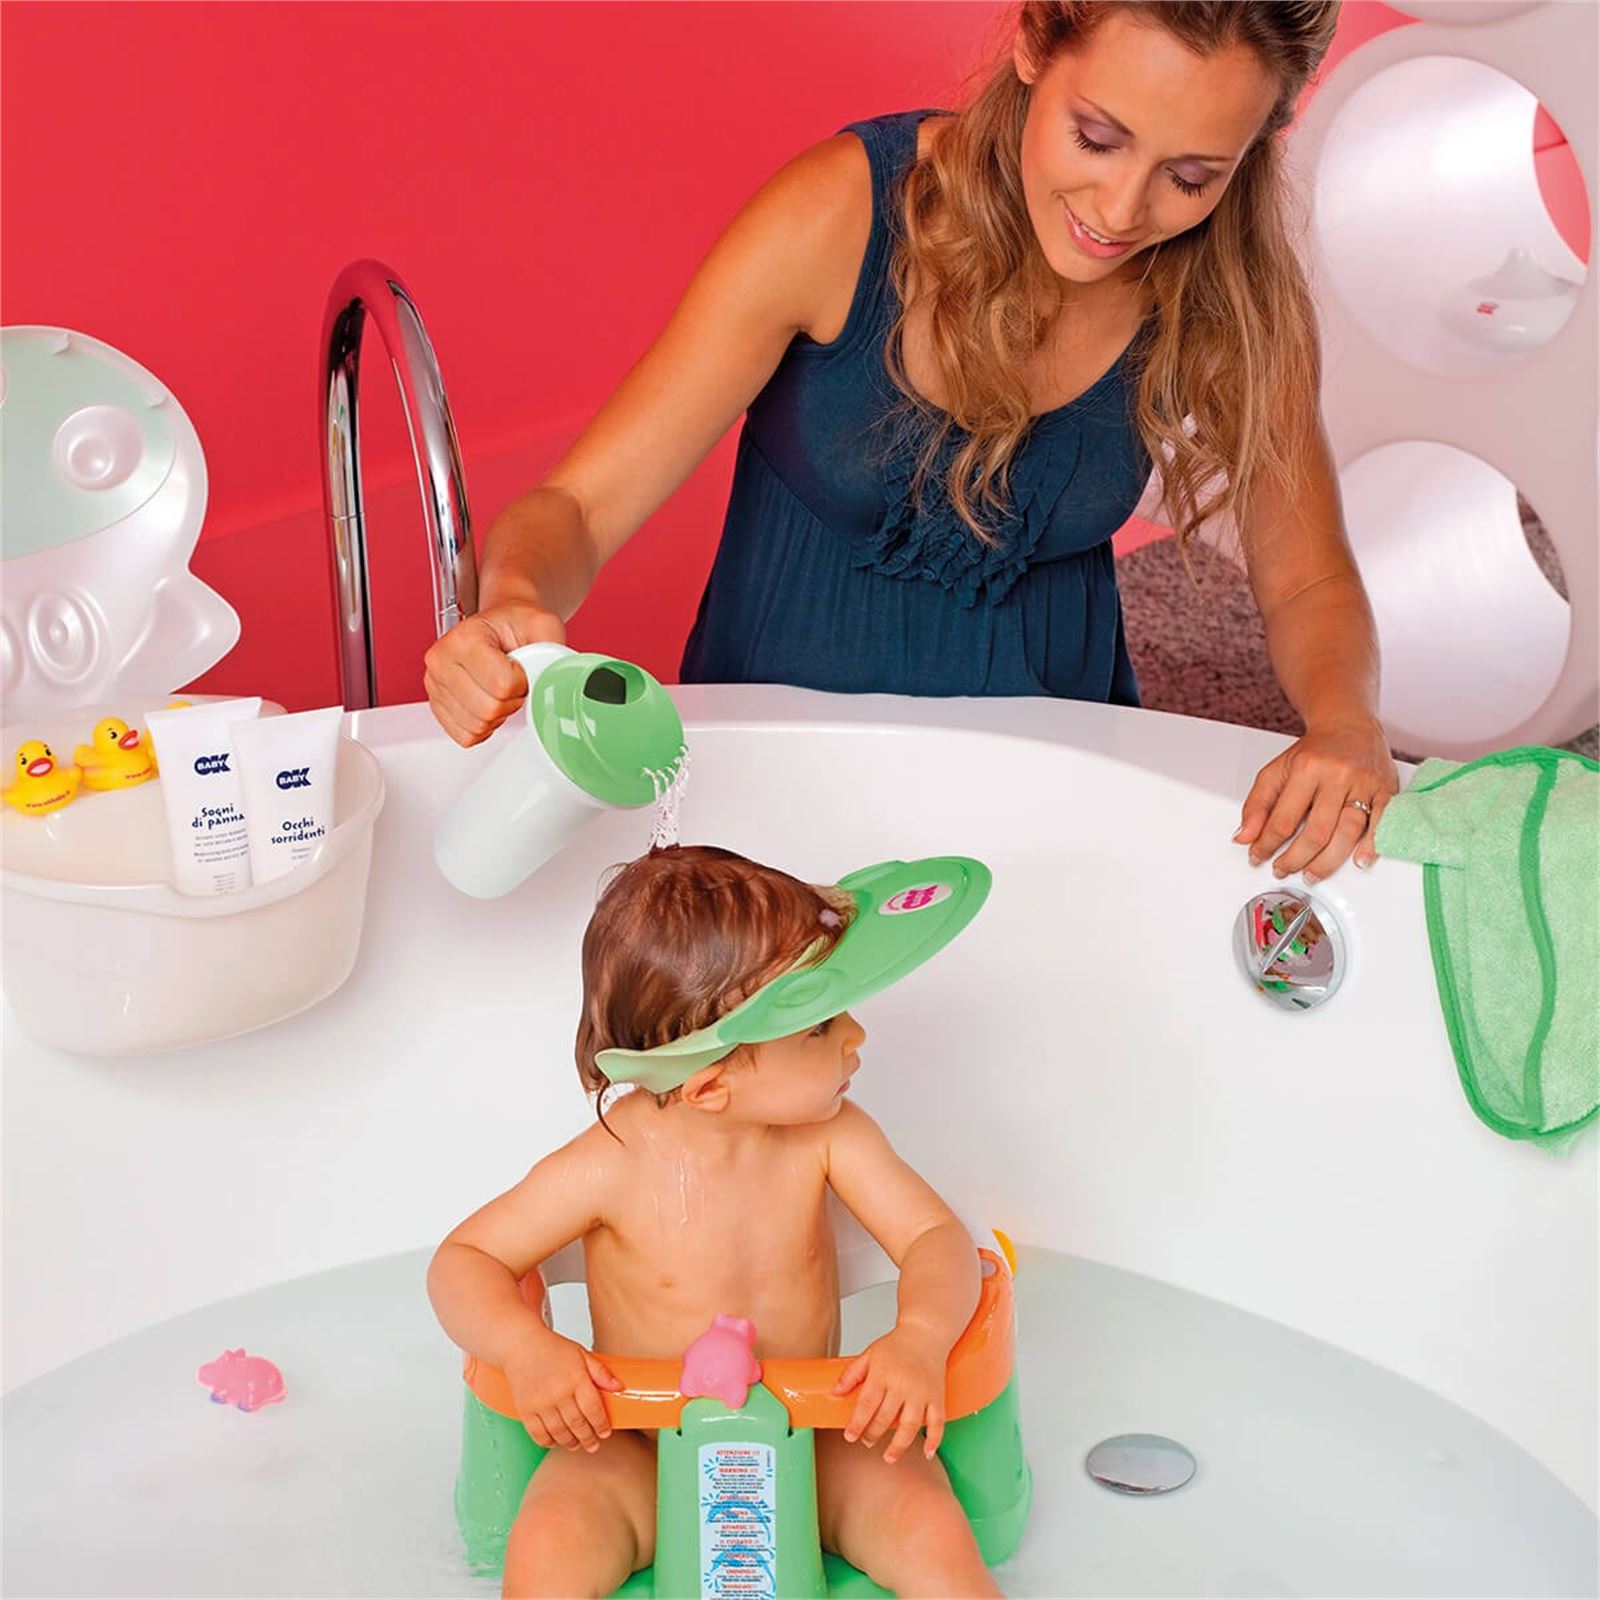 OkBaby Onda Slim Katlanır Bebek Küveti & Hippo Banyo Siperliği / Canlı Pembe